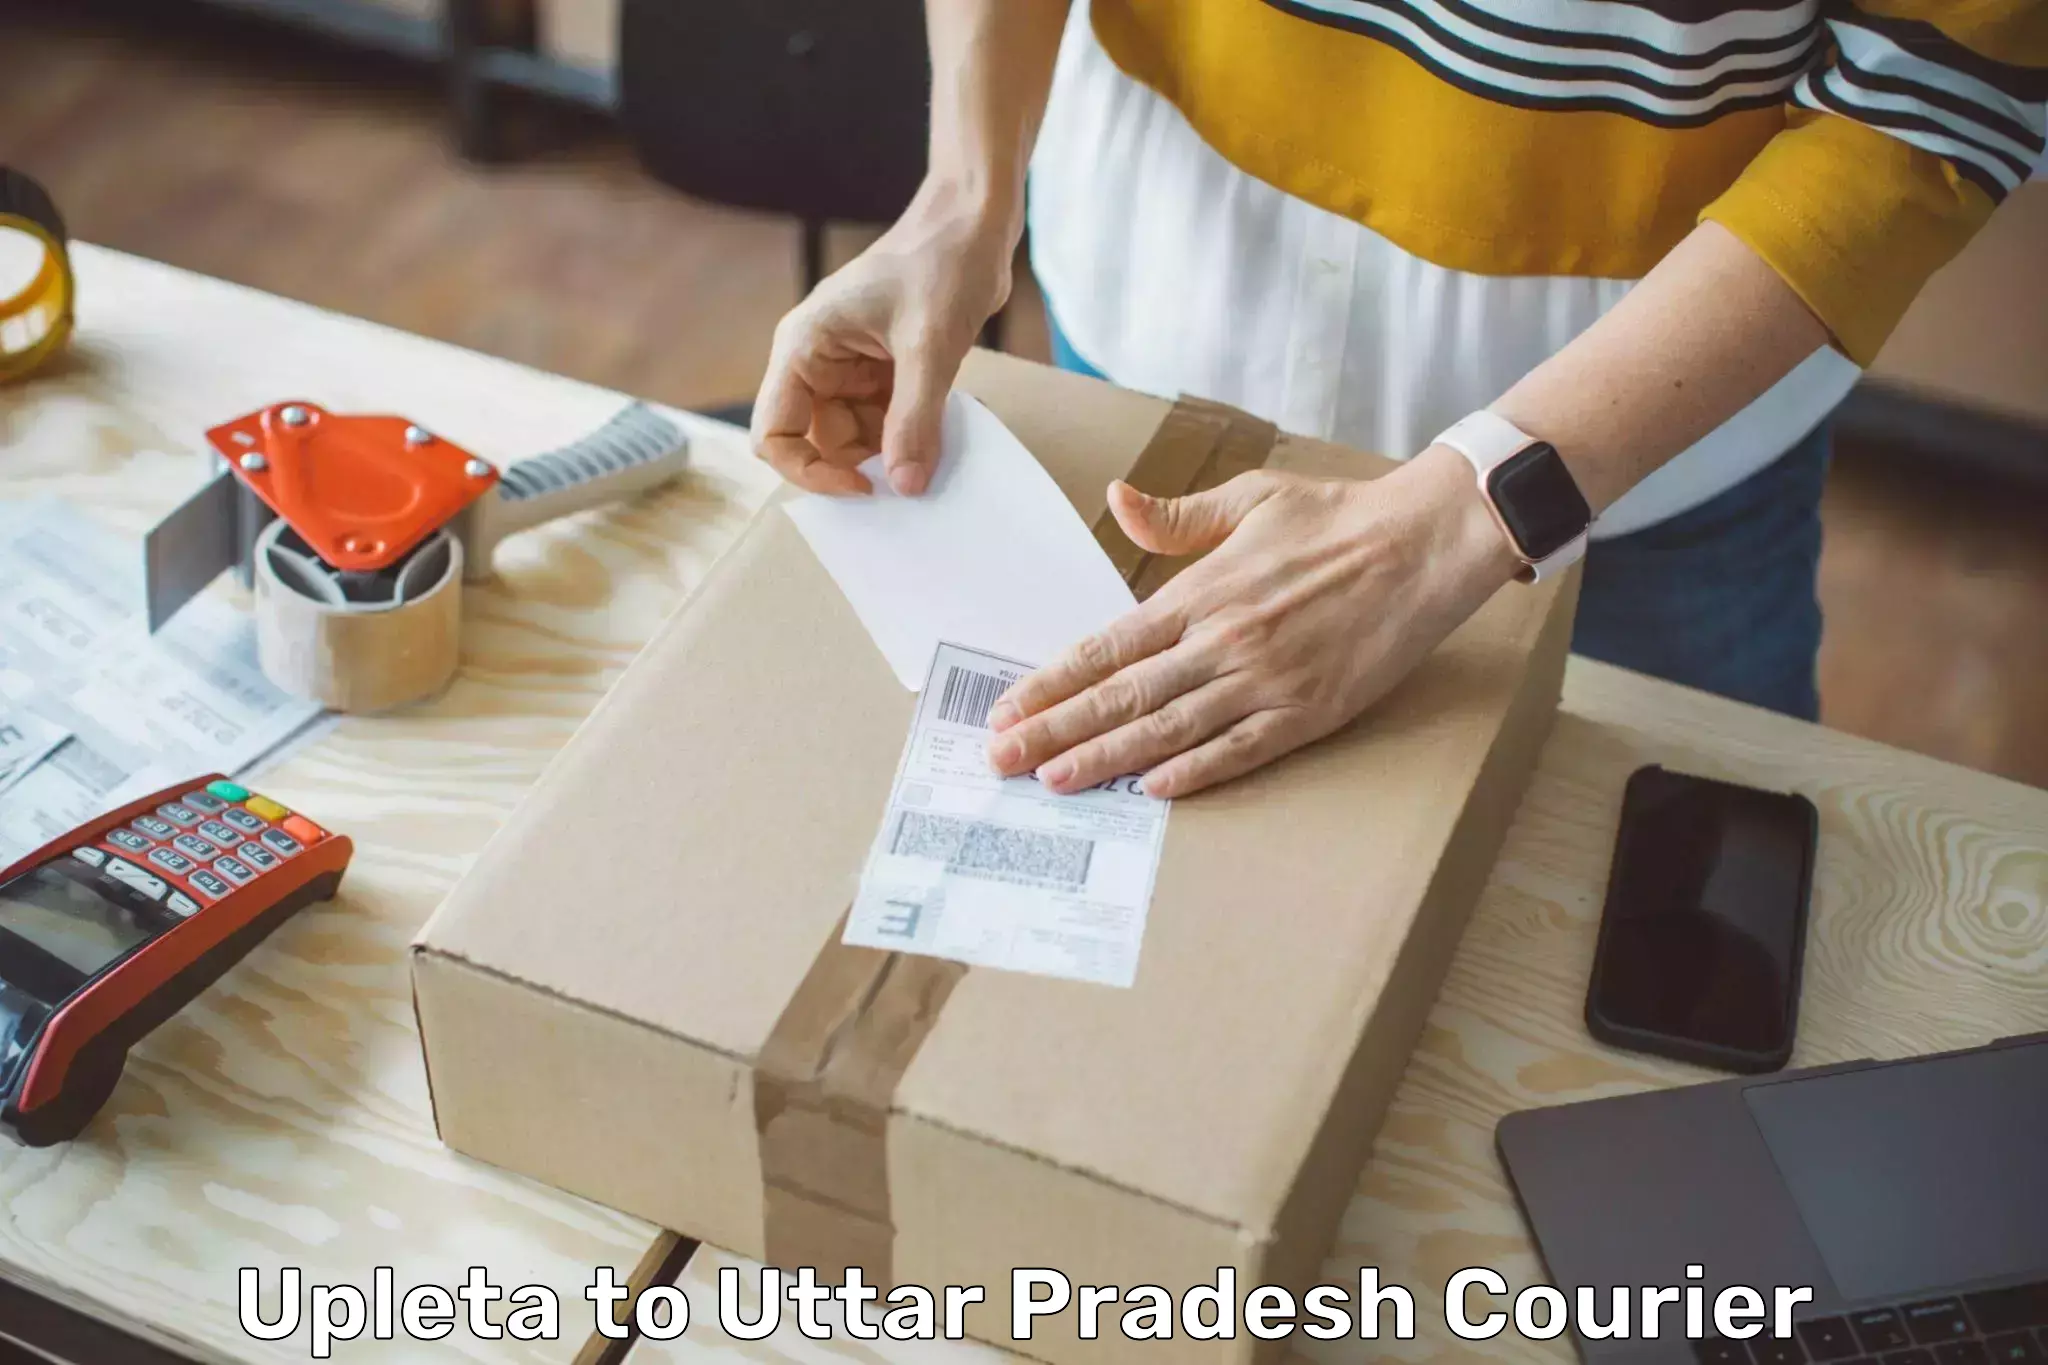 Modern delivery methods Upleta to Uttar Pradesh